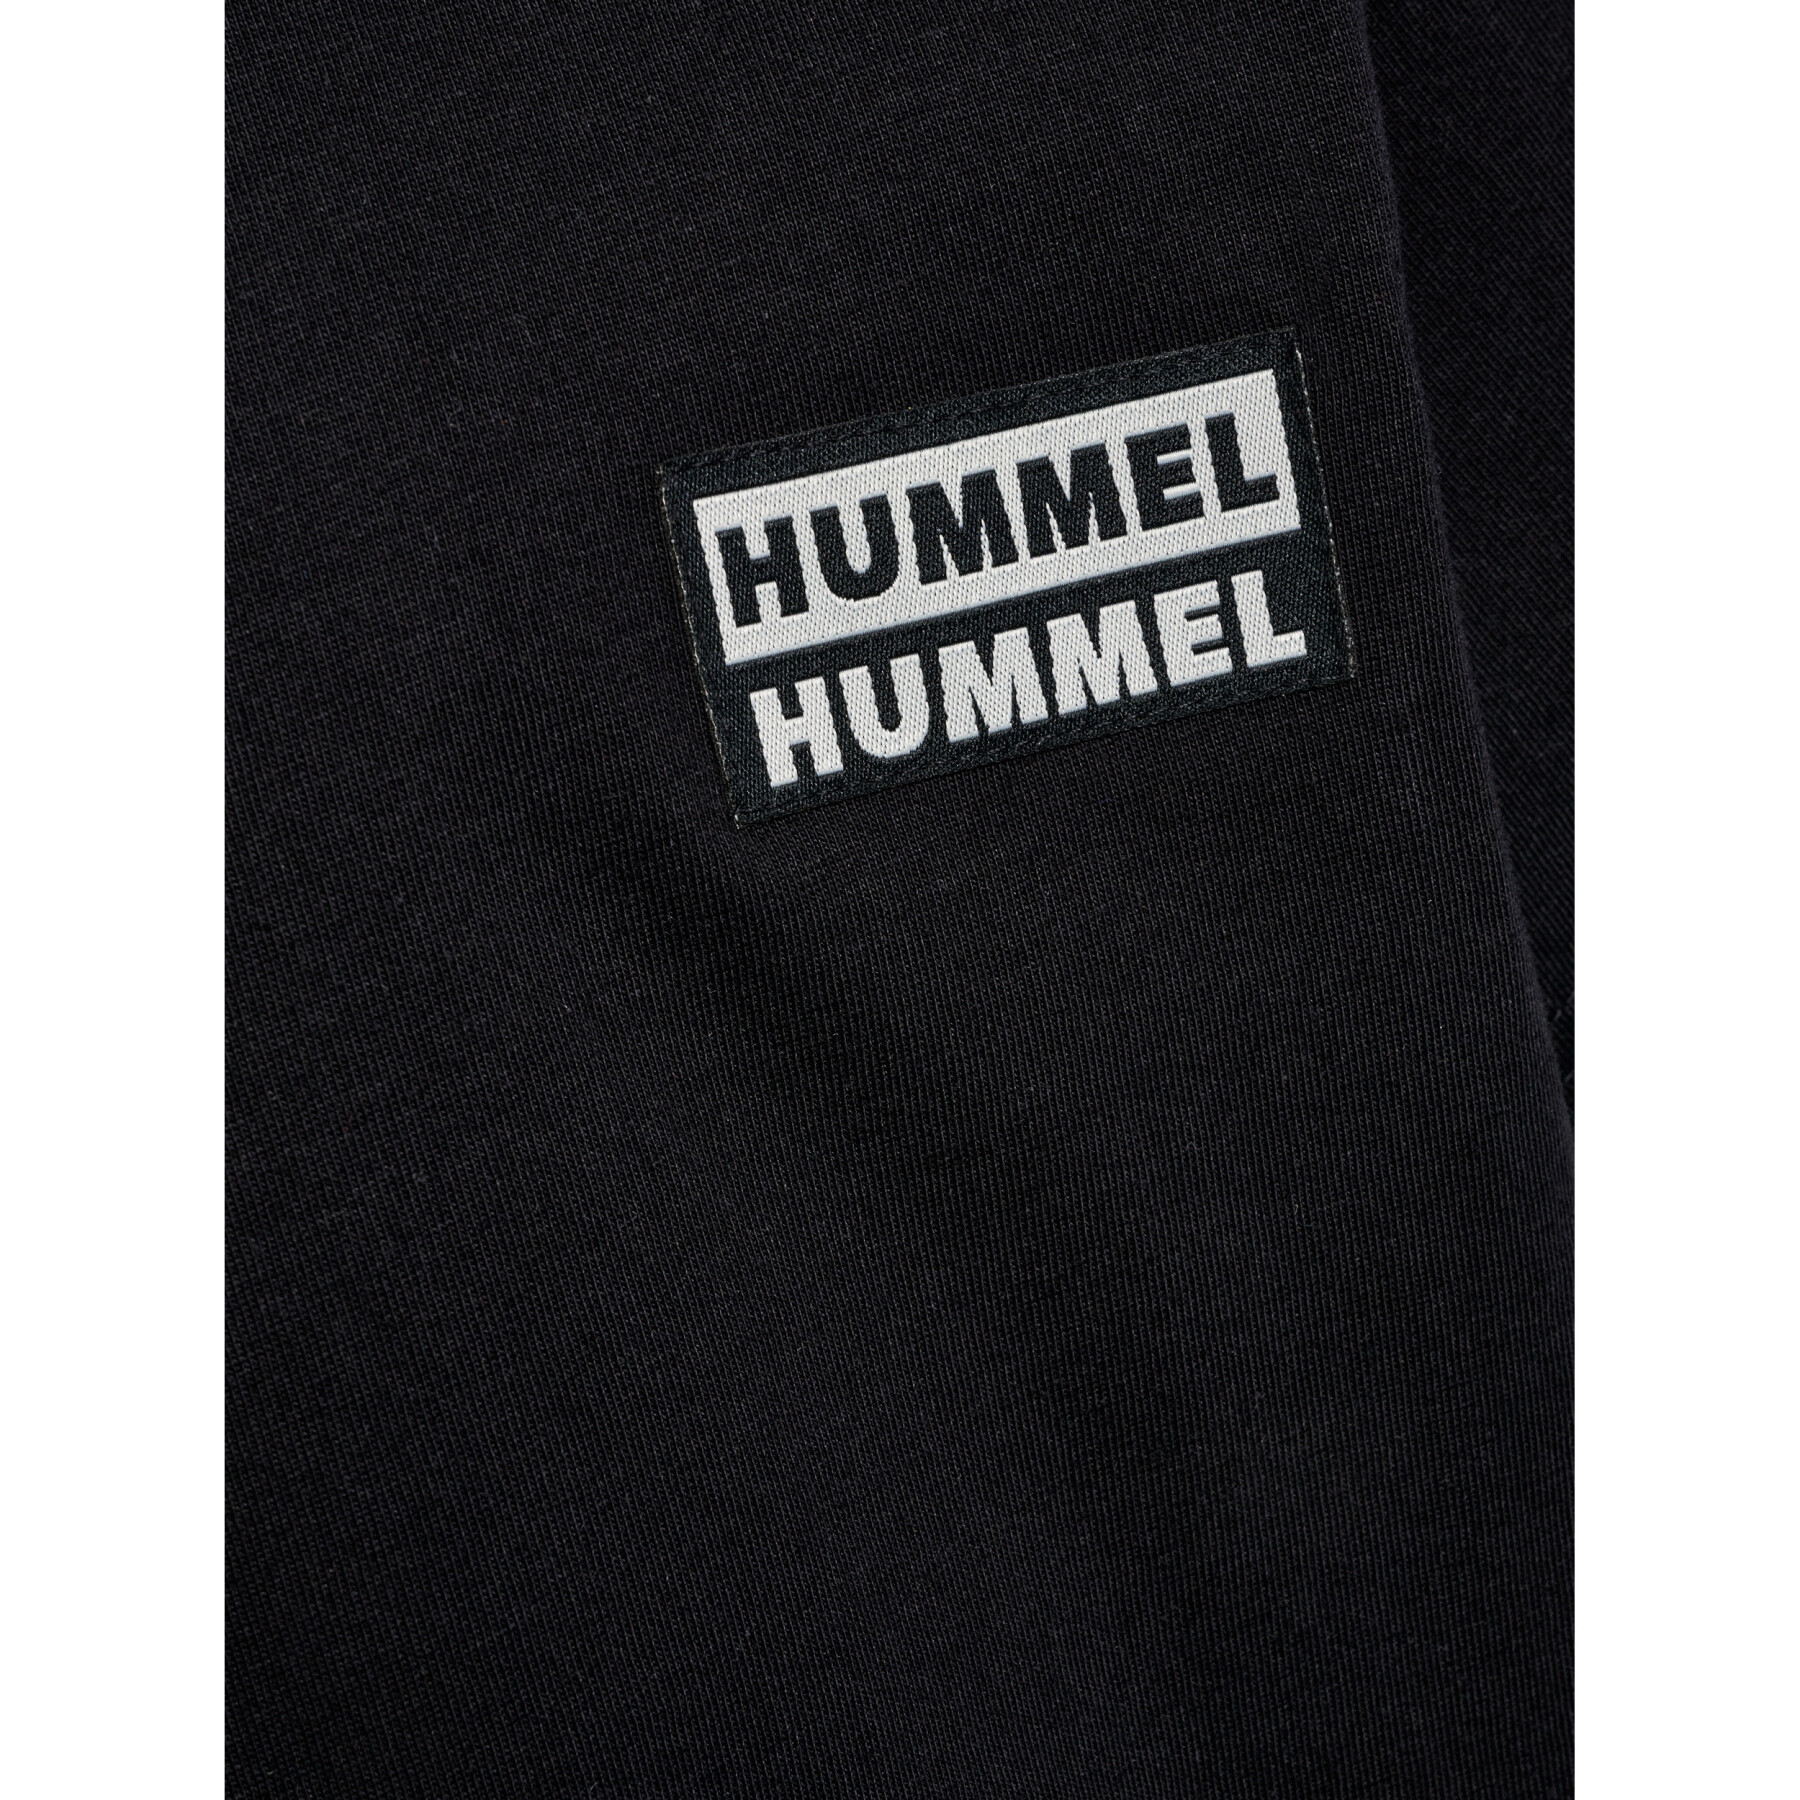 Camiseta infantil Hummel Surf